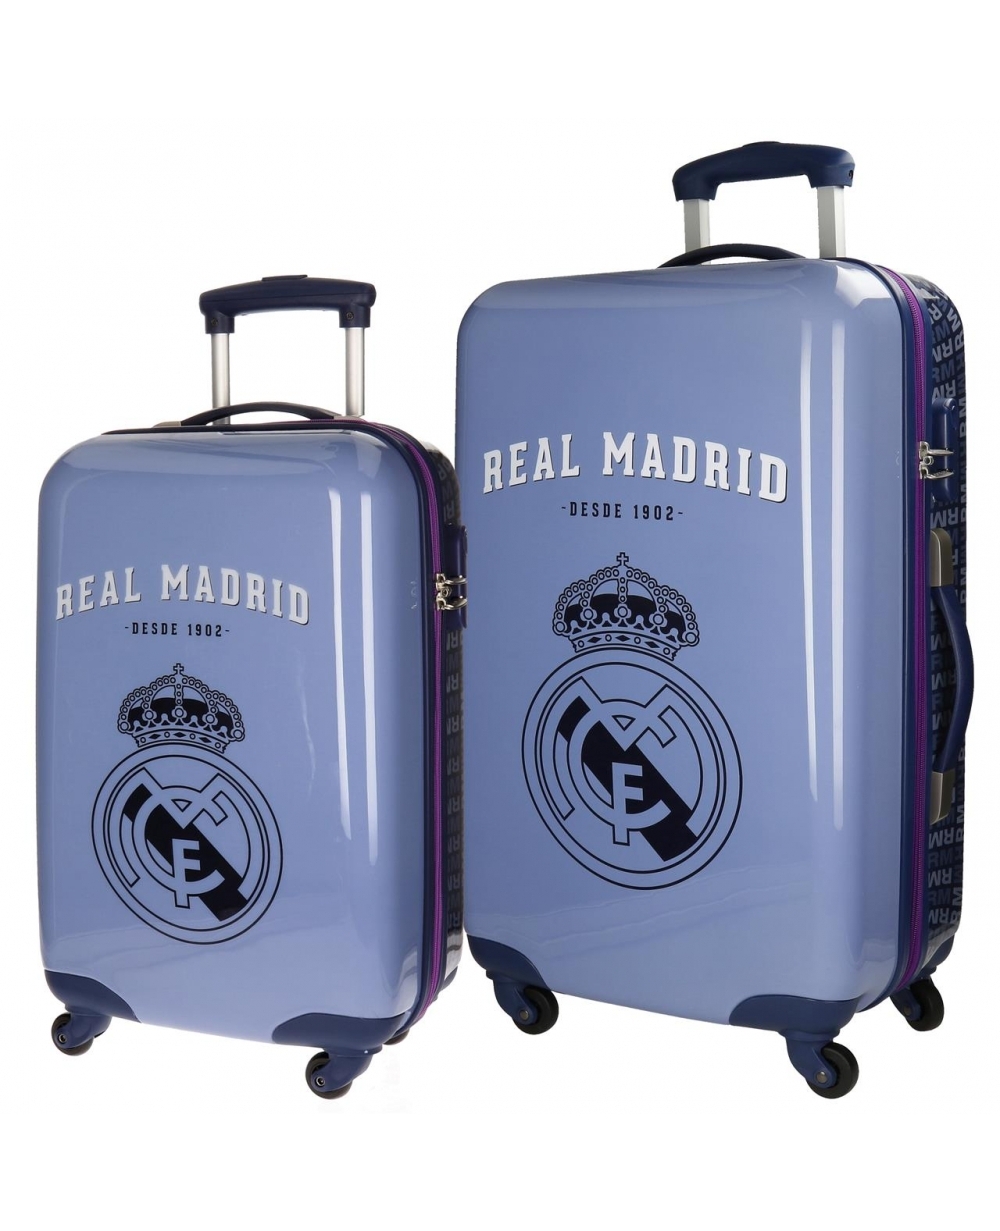 Set rígidas RM 1902 Real Madrid 67cm | Maletia.com